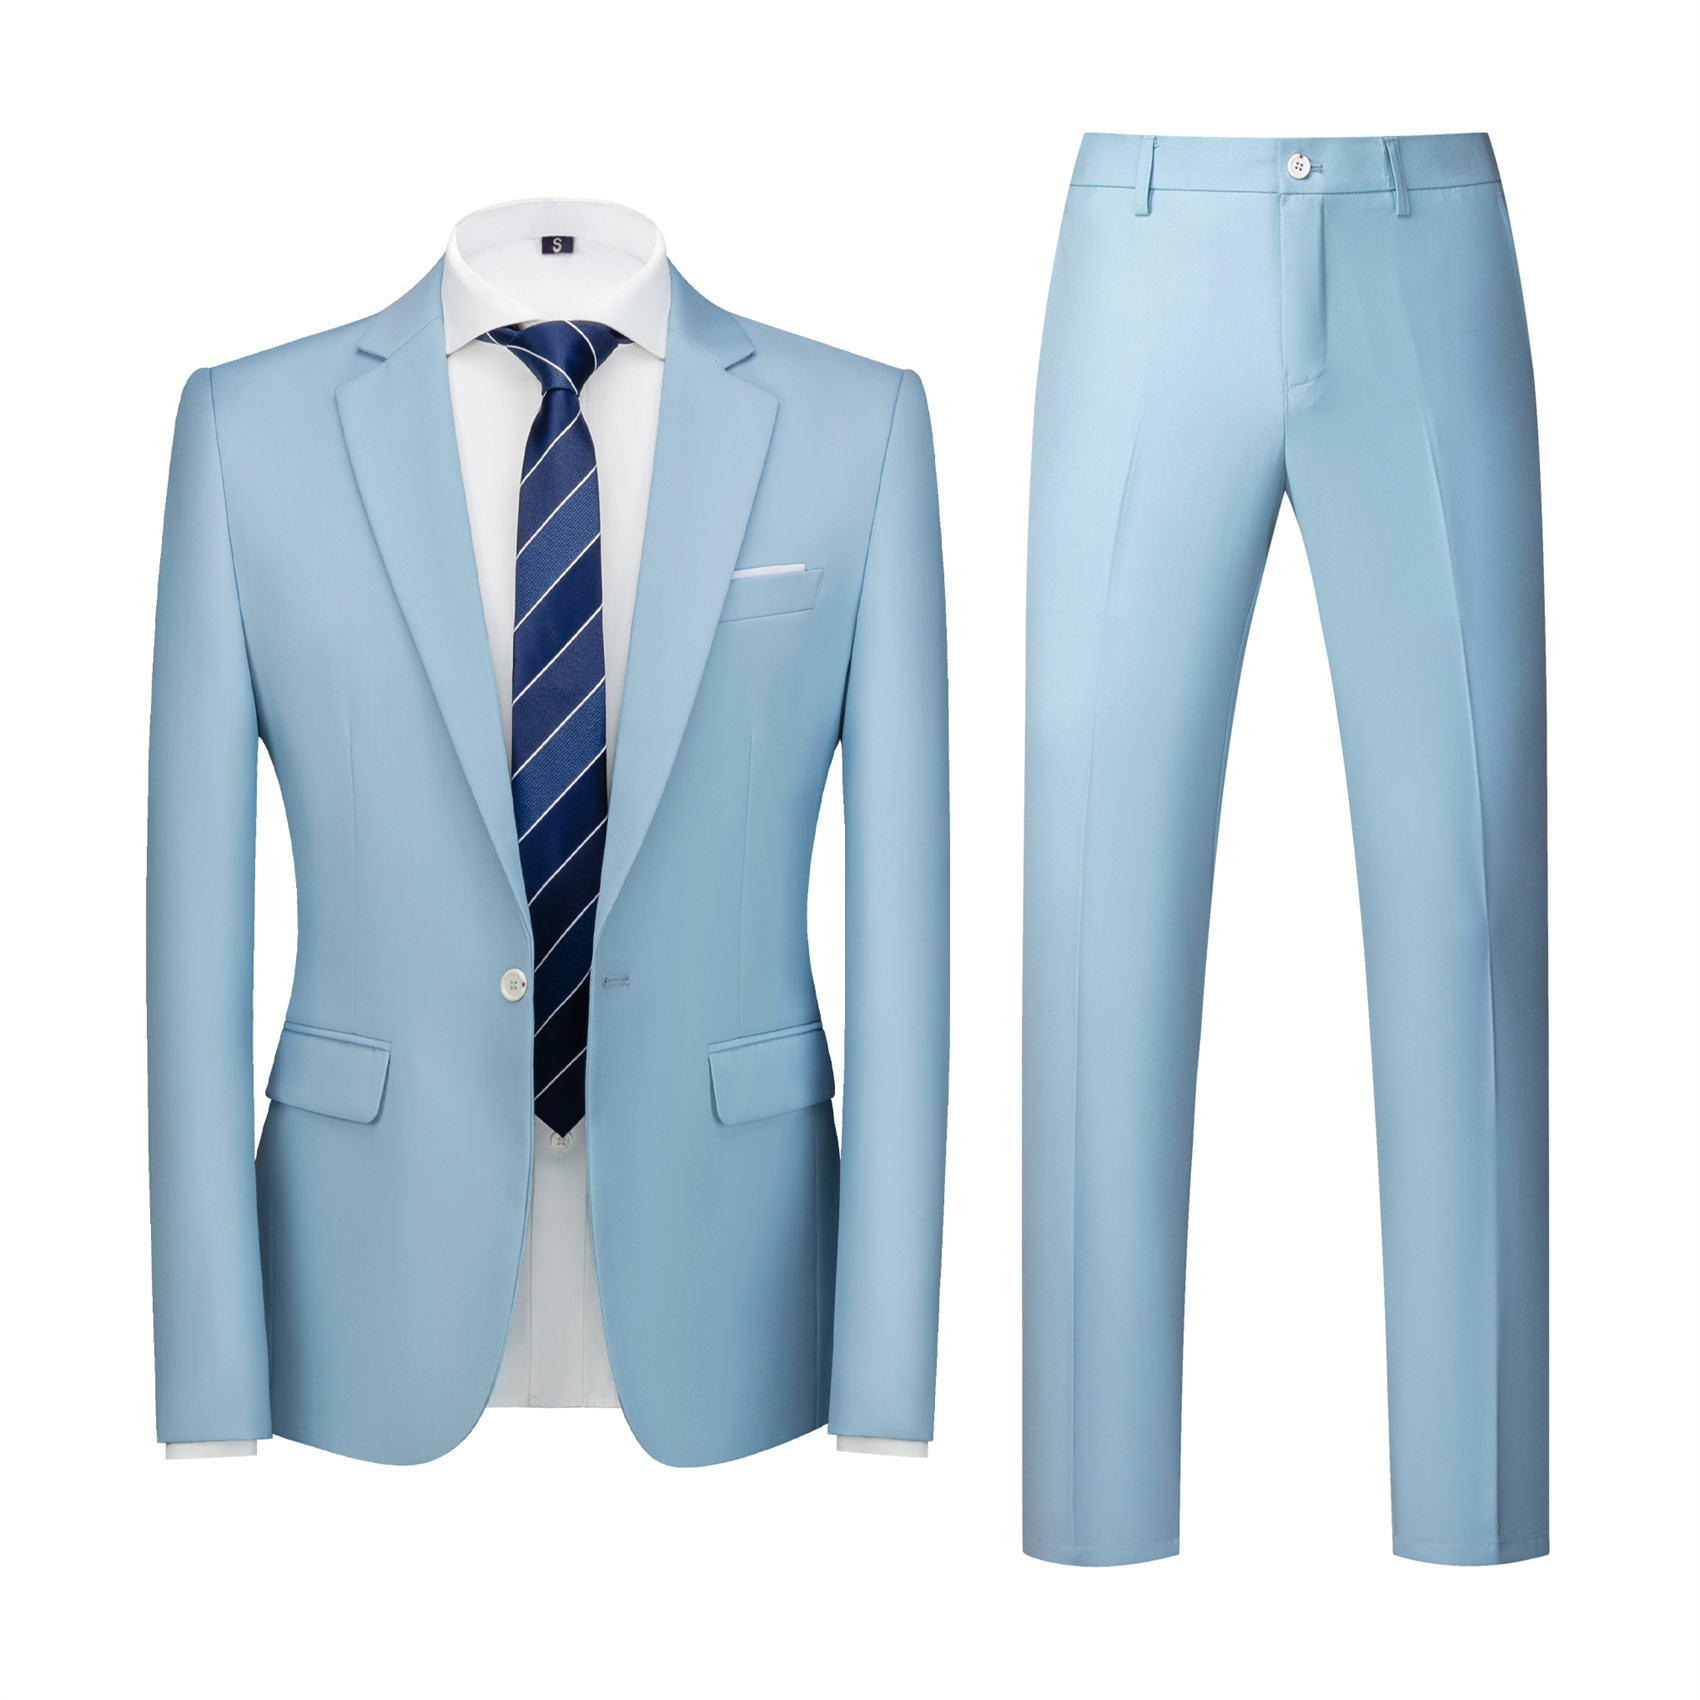 2 Piece Suit for Men, Light Blue, Slim Fit (1 Button)